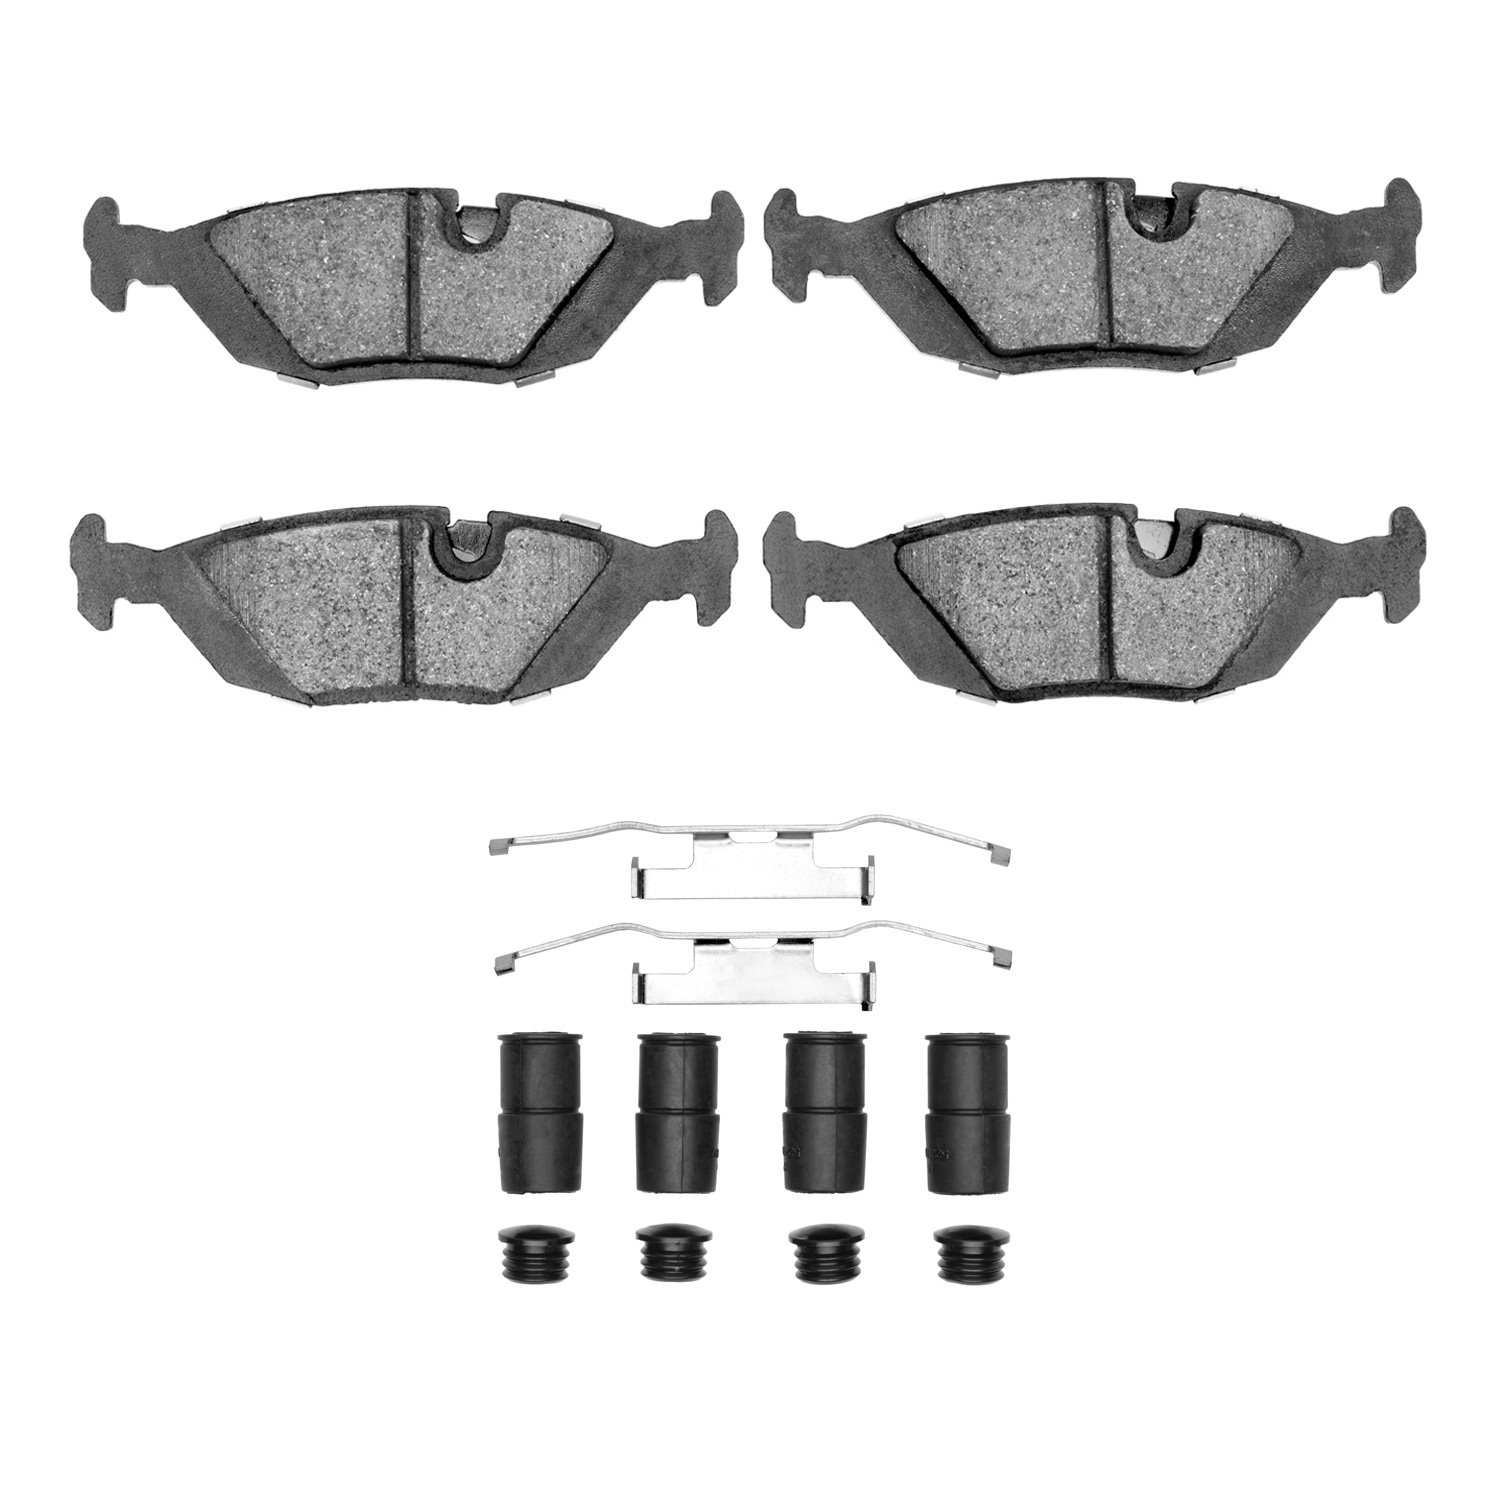 1311-0279-01 3000-Series Semi-Metallic Brake Pads & Hardware Kit, 1981-1991 BMW, Position: Rear